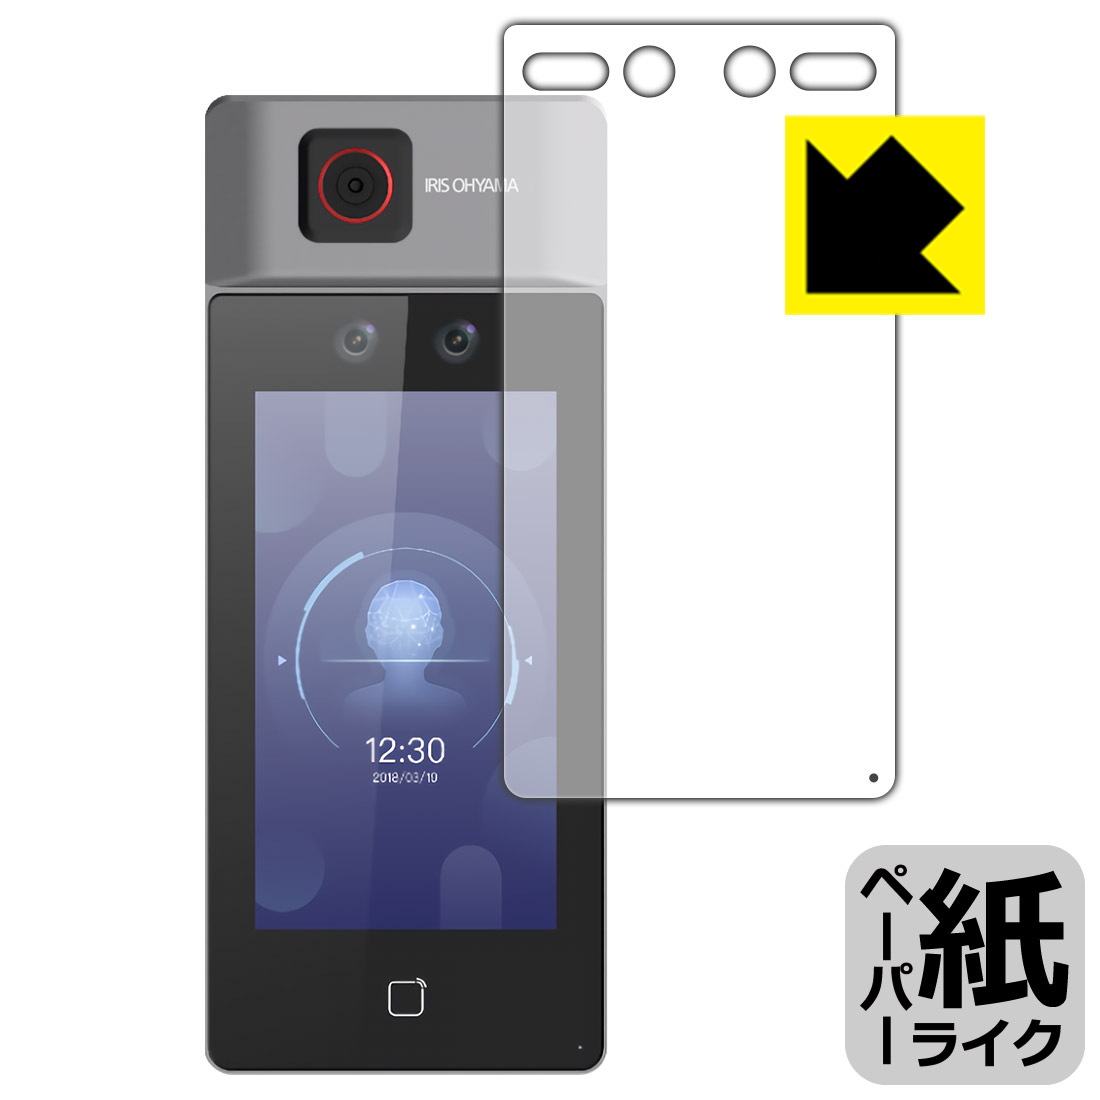 ペーパーライク保護フィルム 顔認証型AIサーマルカメラ IRC-F6713SG 用 日本製 自社製造直販